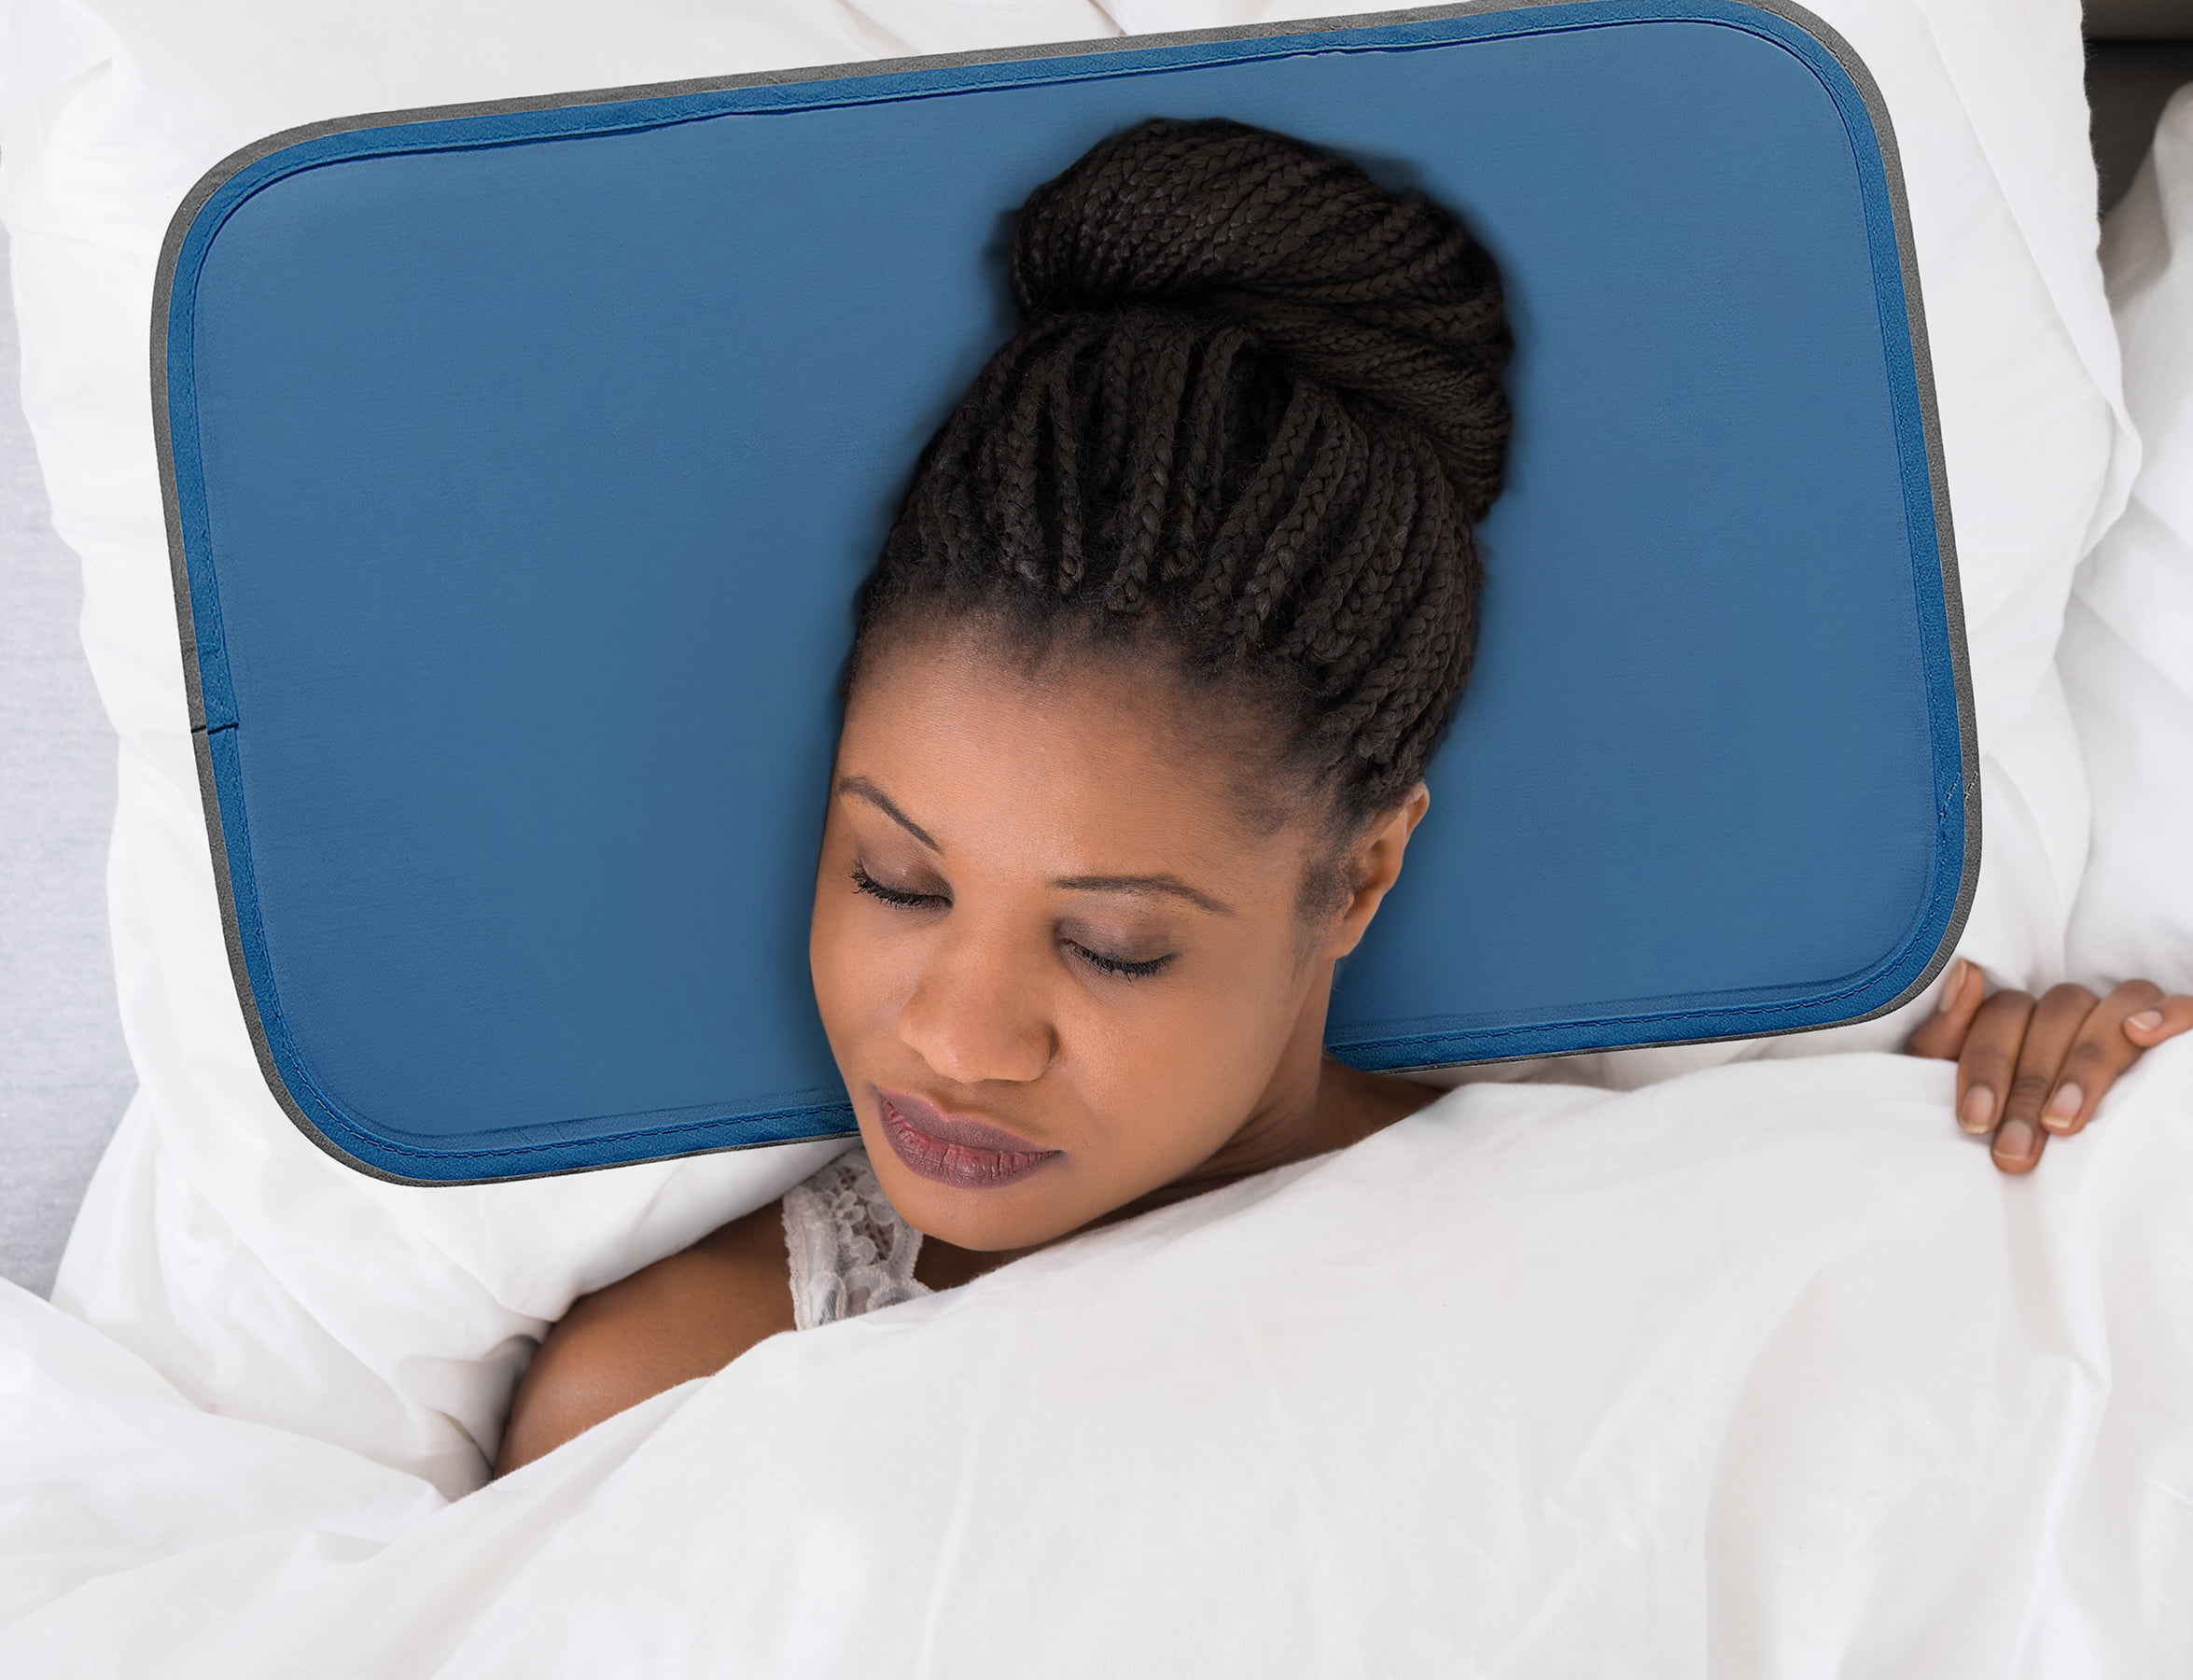 Aineeba Cooling Pillow Gel Mat Upgrade Sleep Cool Care Technologies Pillow NEW 